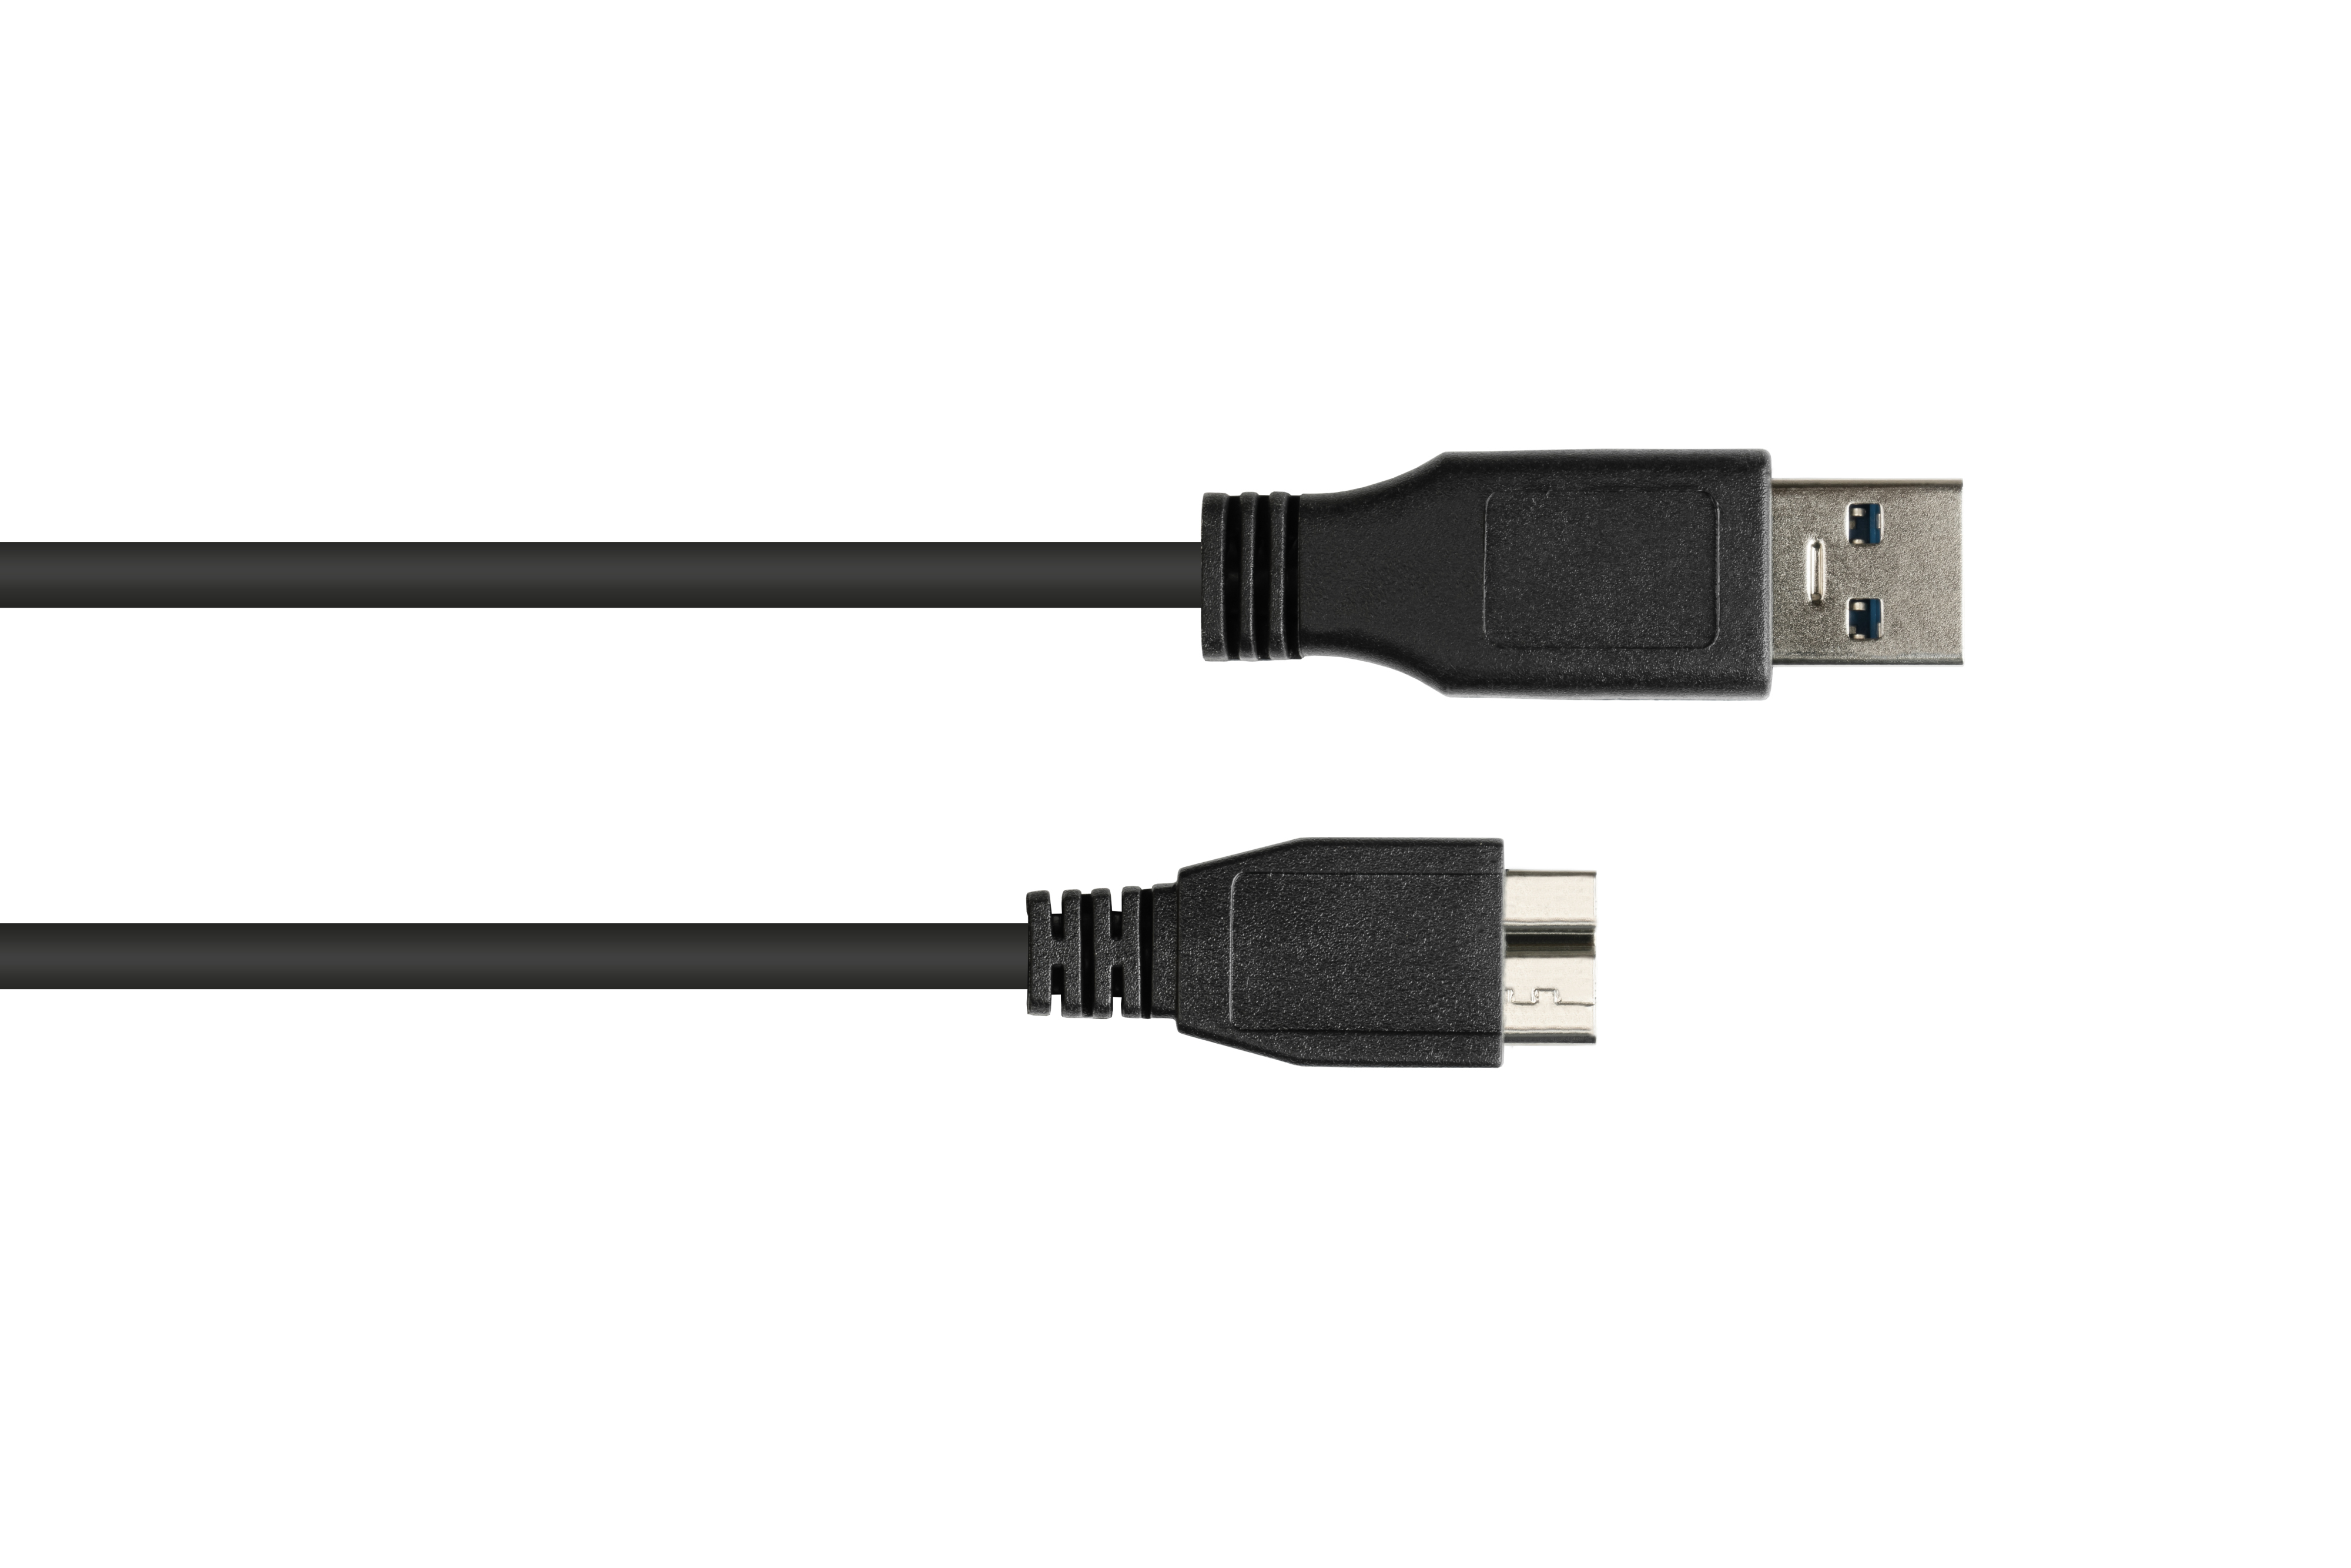 GOOD A schwarz 3.0 Stecker CONNECTIONS B, Stecker USB Micro Anschlusskabel an